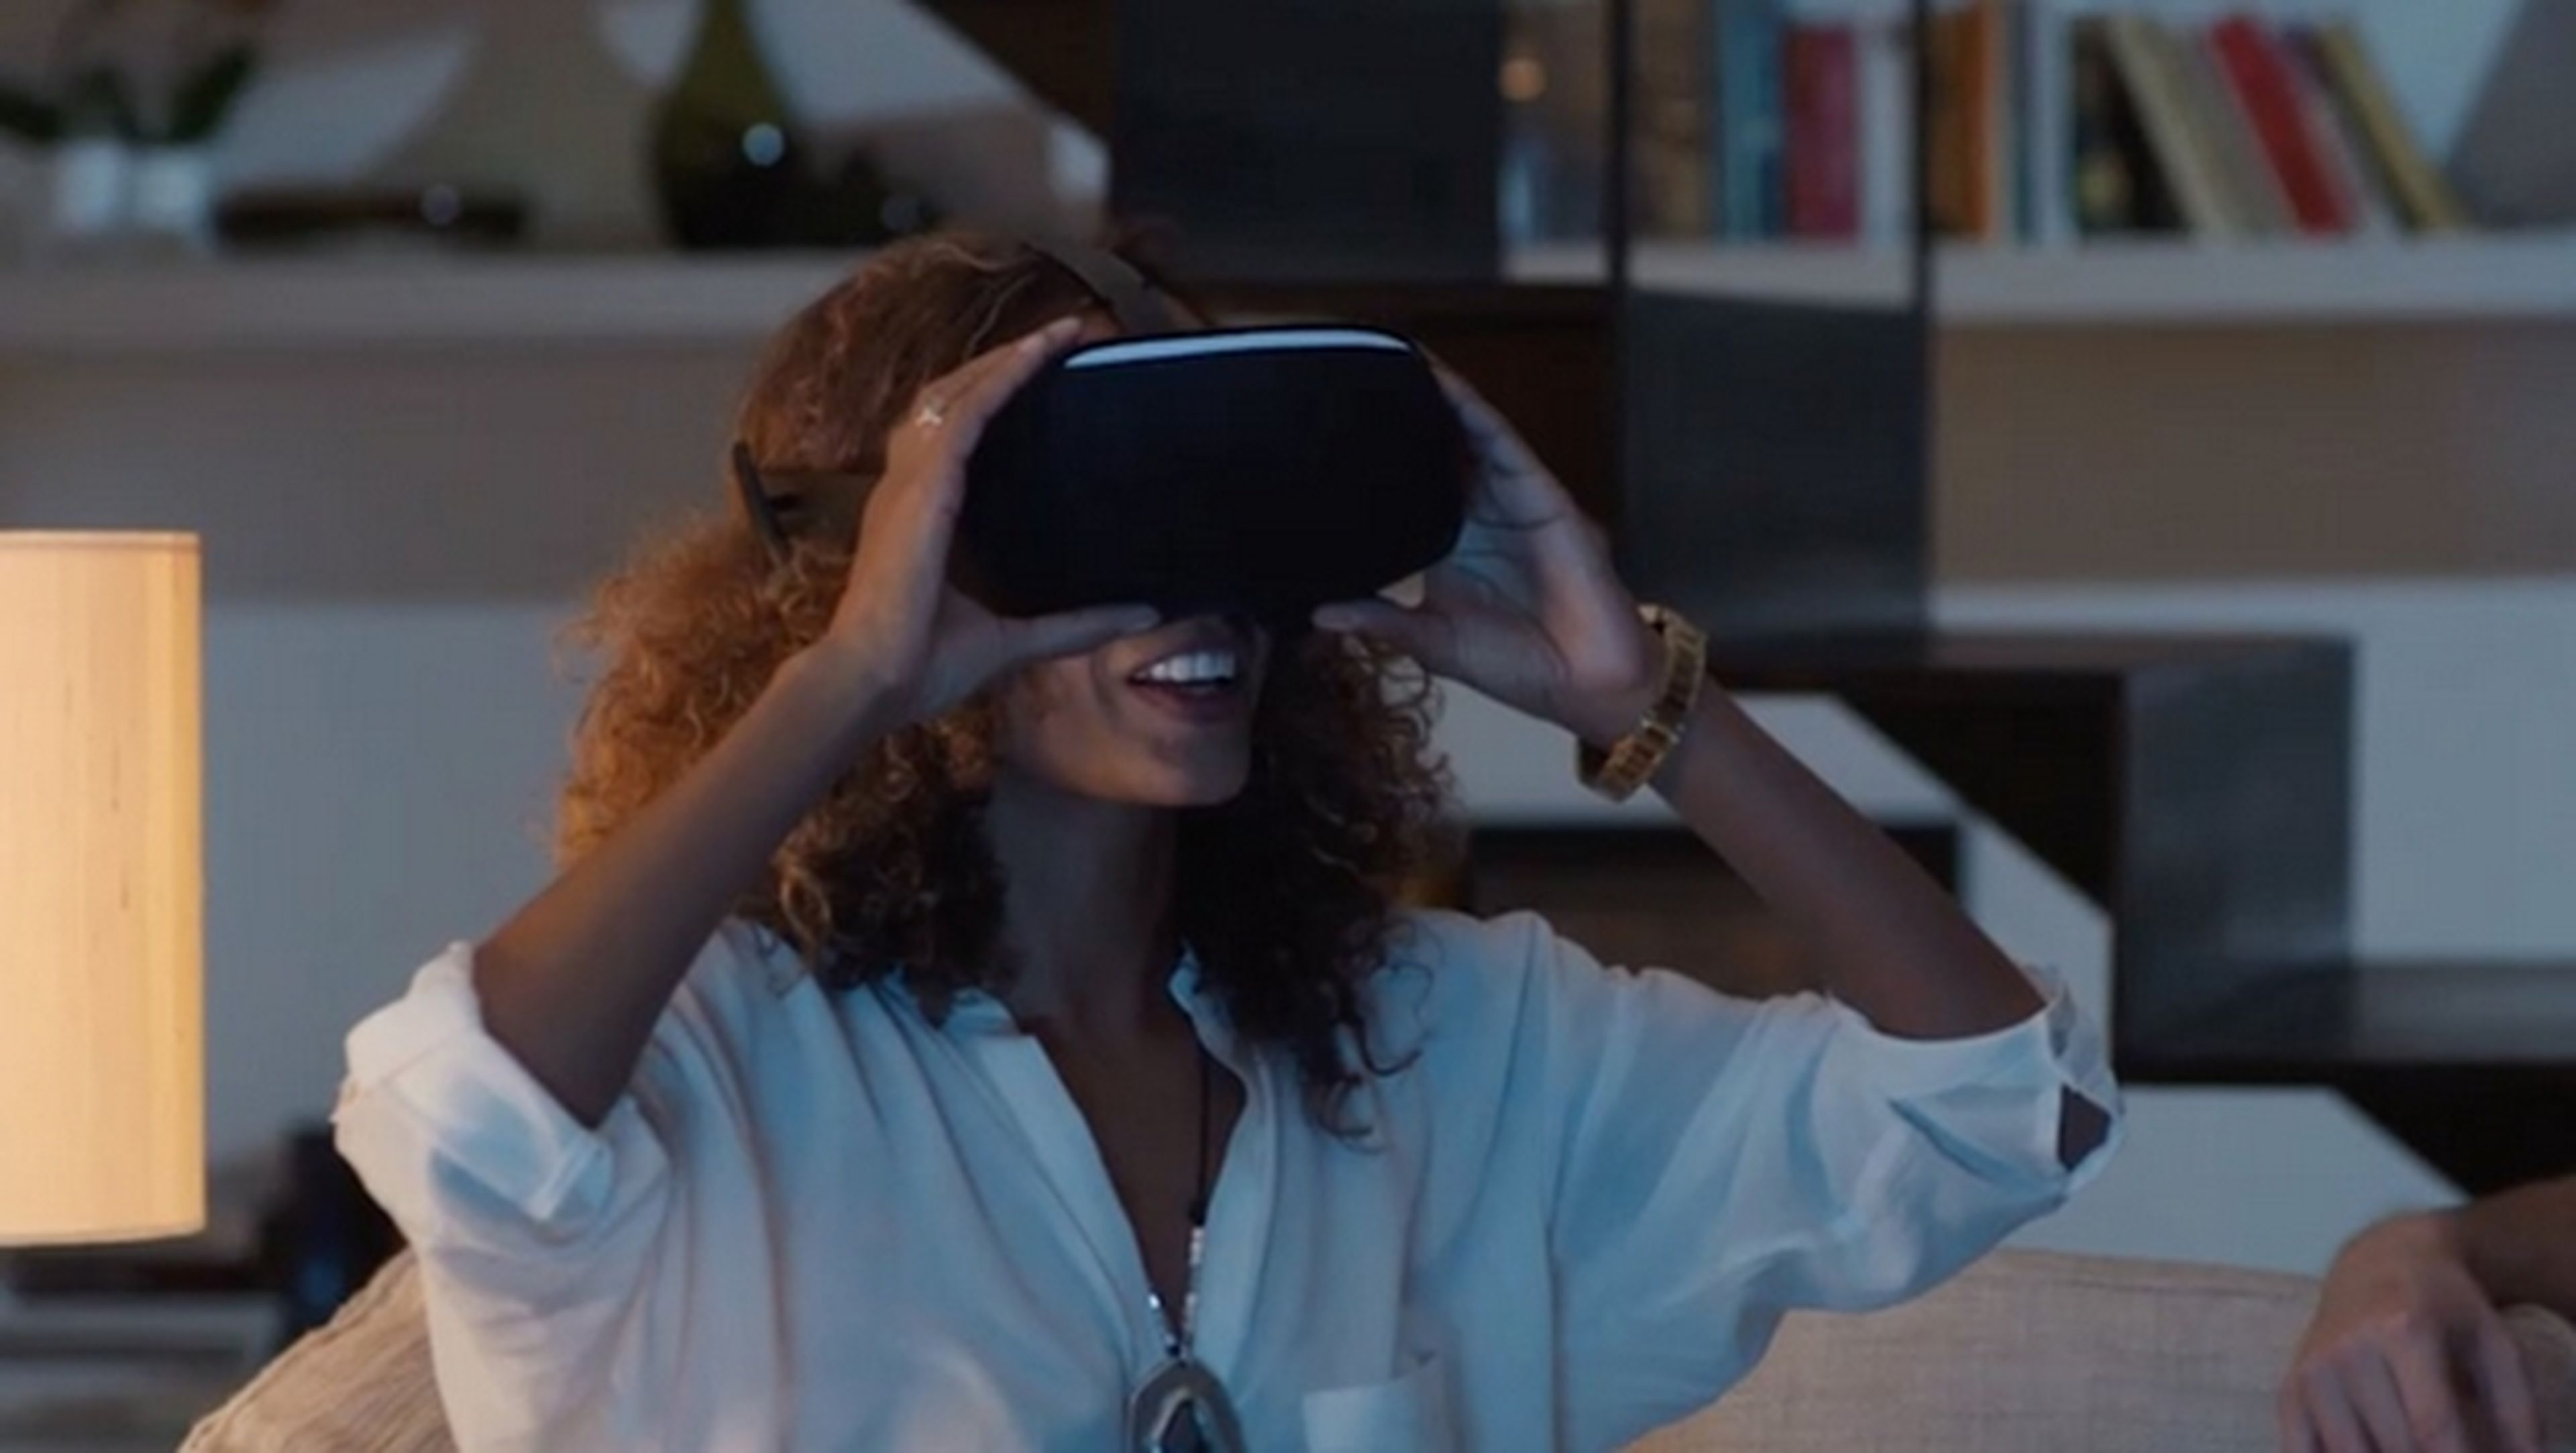 Qualcomm anuncia su kit de realidad virtual Snapdragon VR820